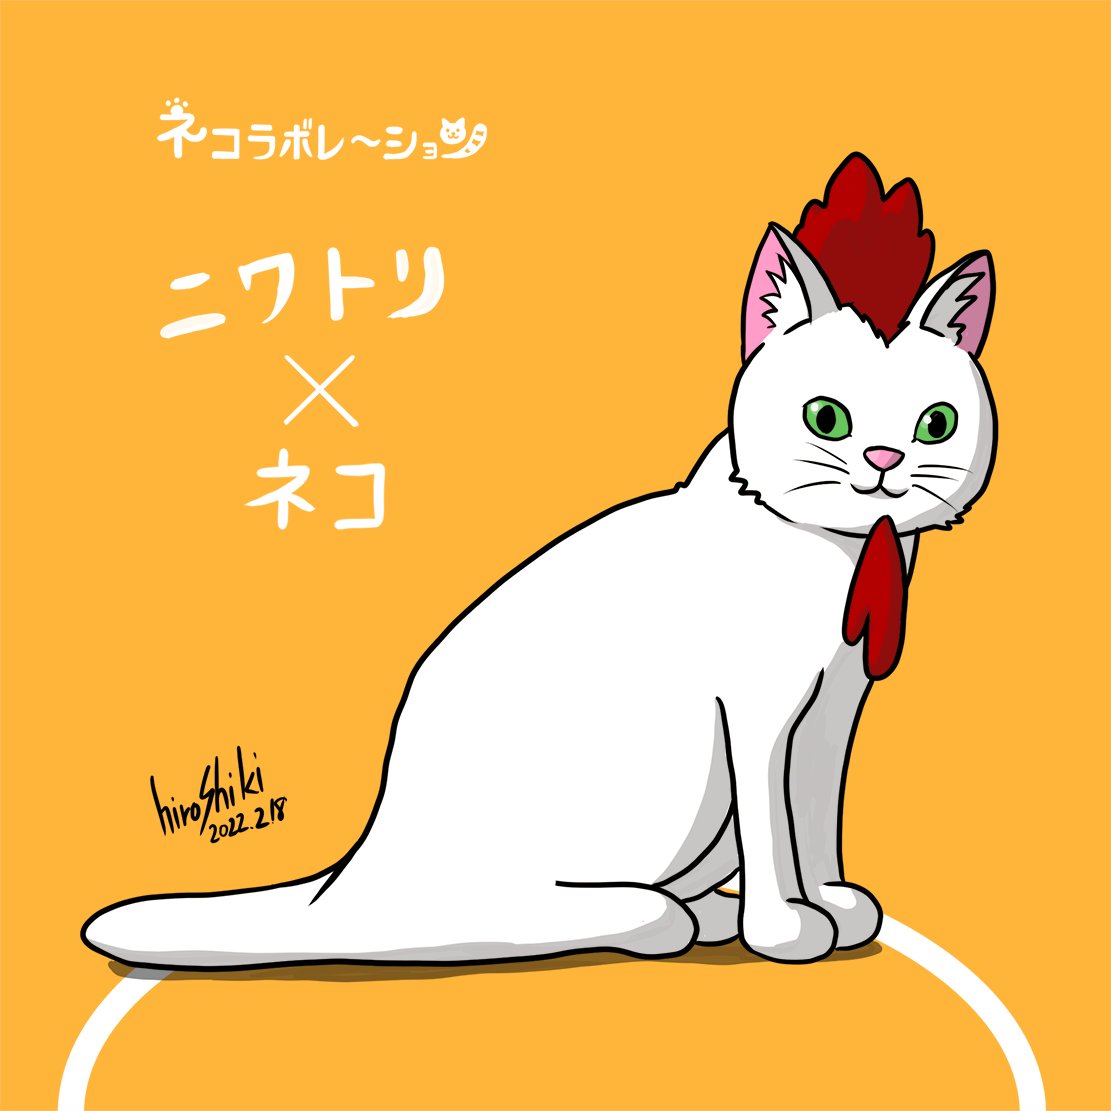 「猫とコラボレーションするネコラボレーション。にわとりとコラボしてみました。みんな」|hiroshiki@イラストと猫のイラスト